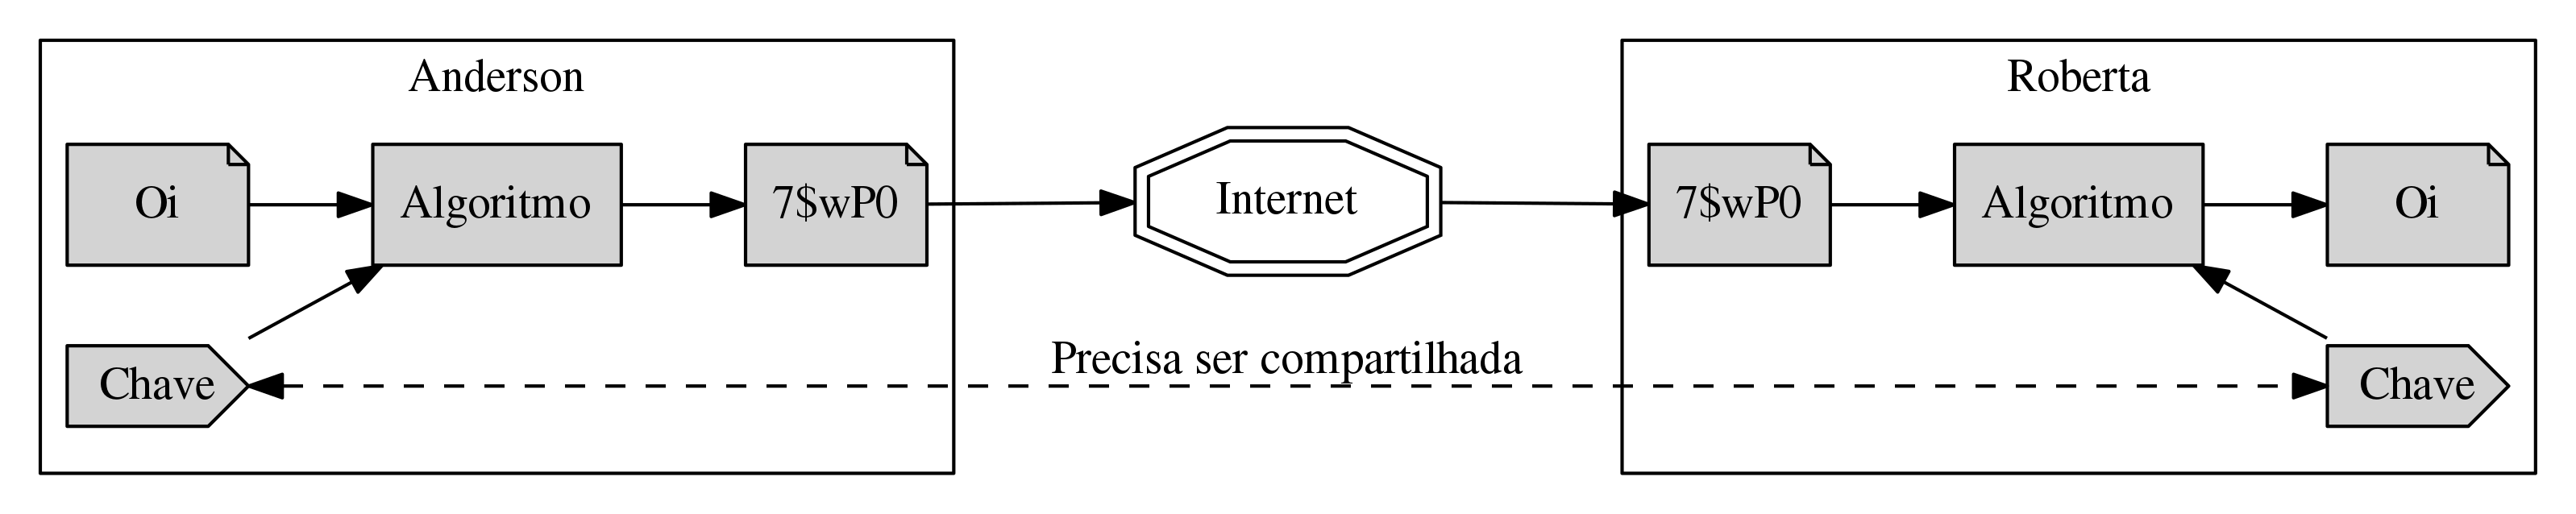 Diagrama conceitual